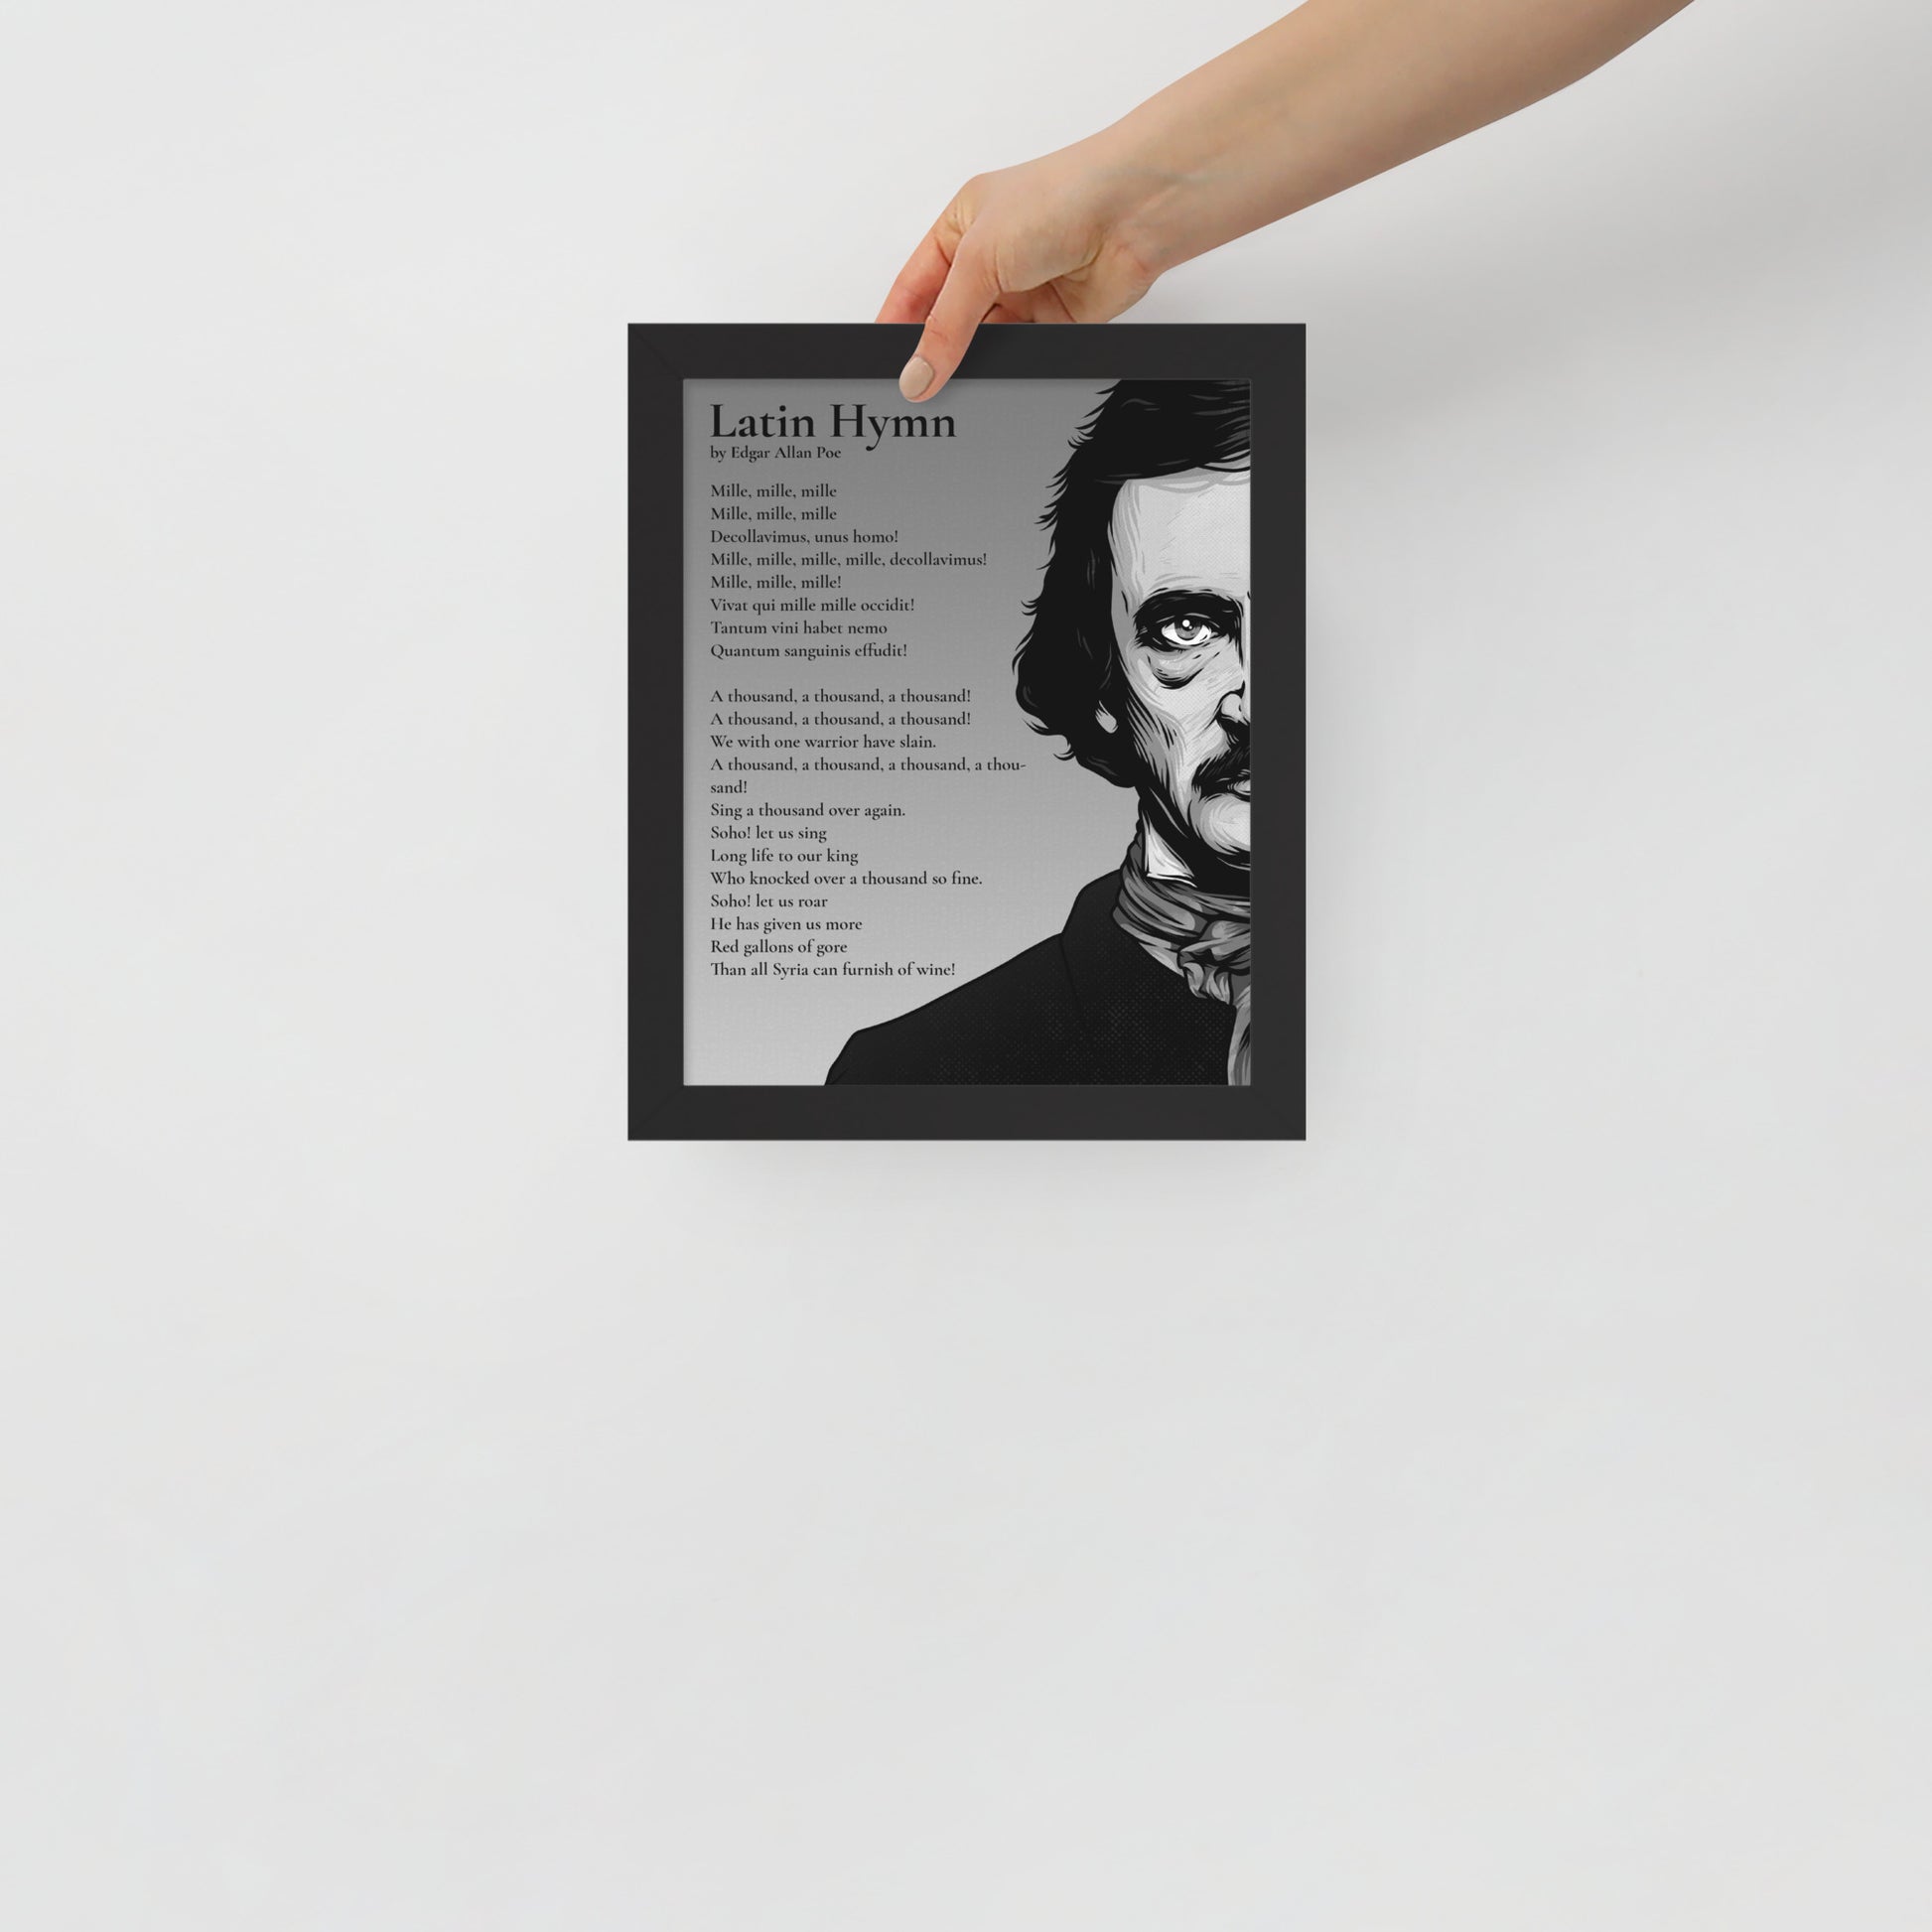 Edgar Allan Poe's 'Latin Hymn' Framed Matted Poster - 8 x 10 Black Frame